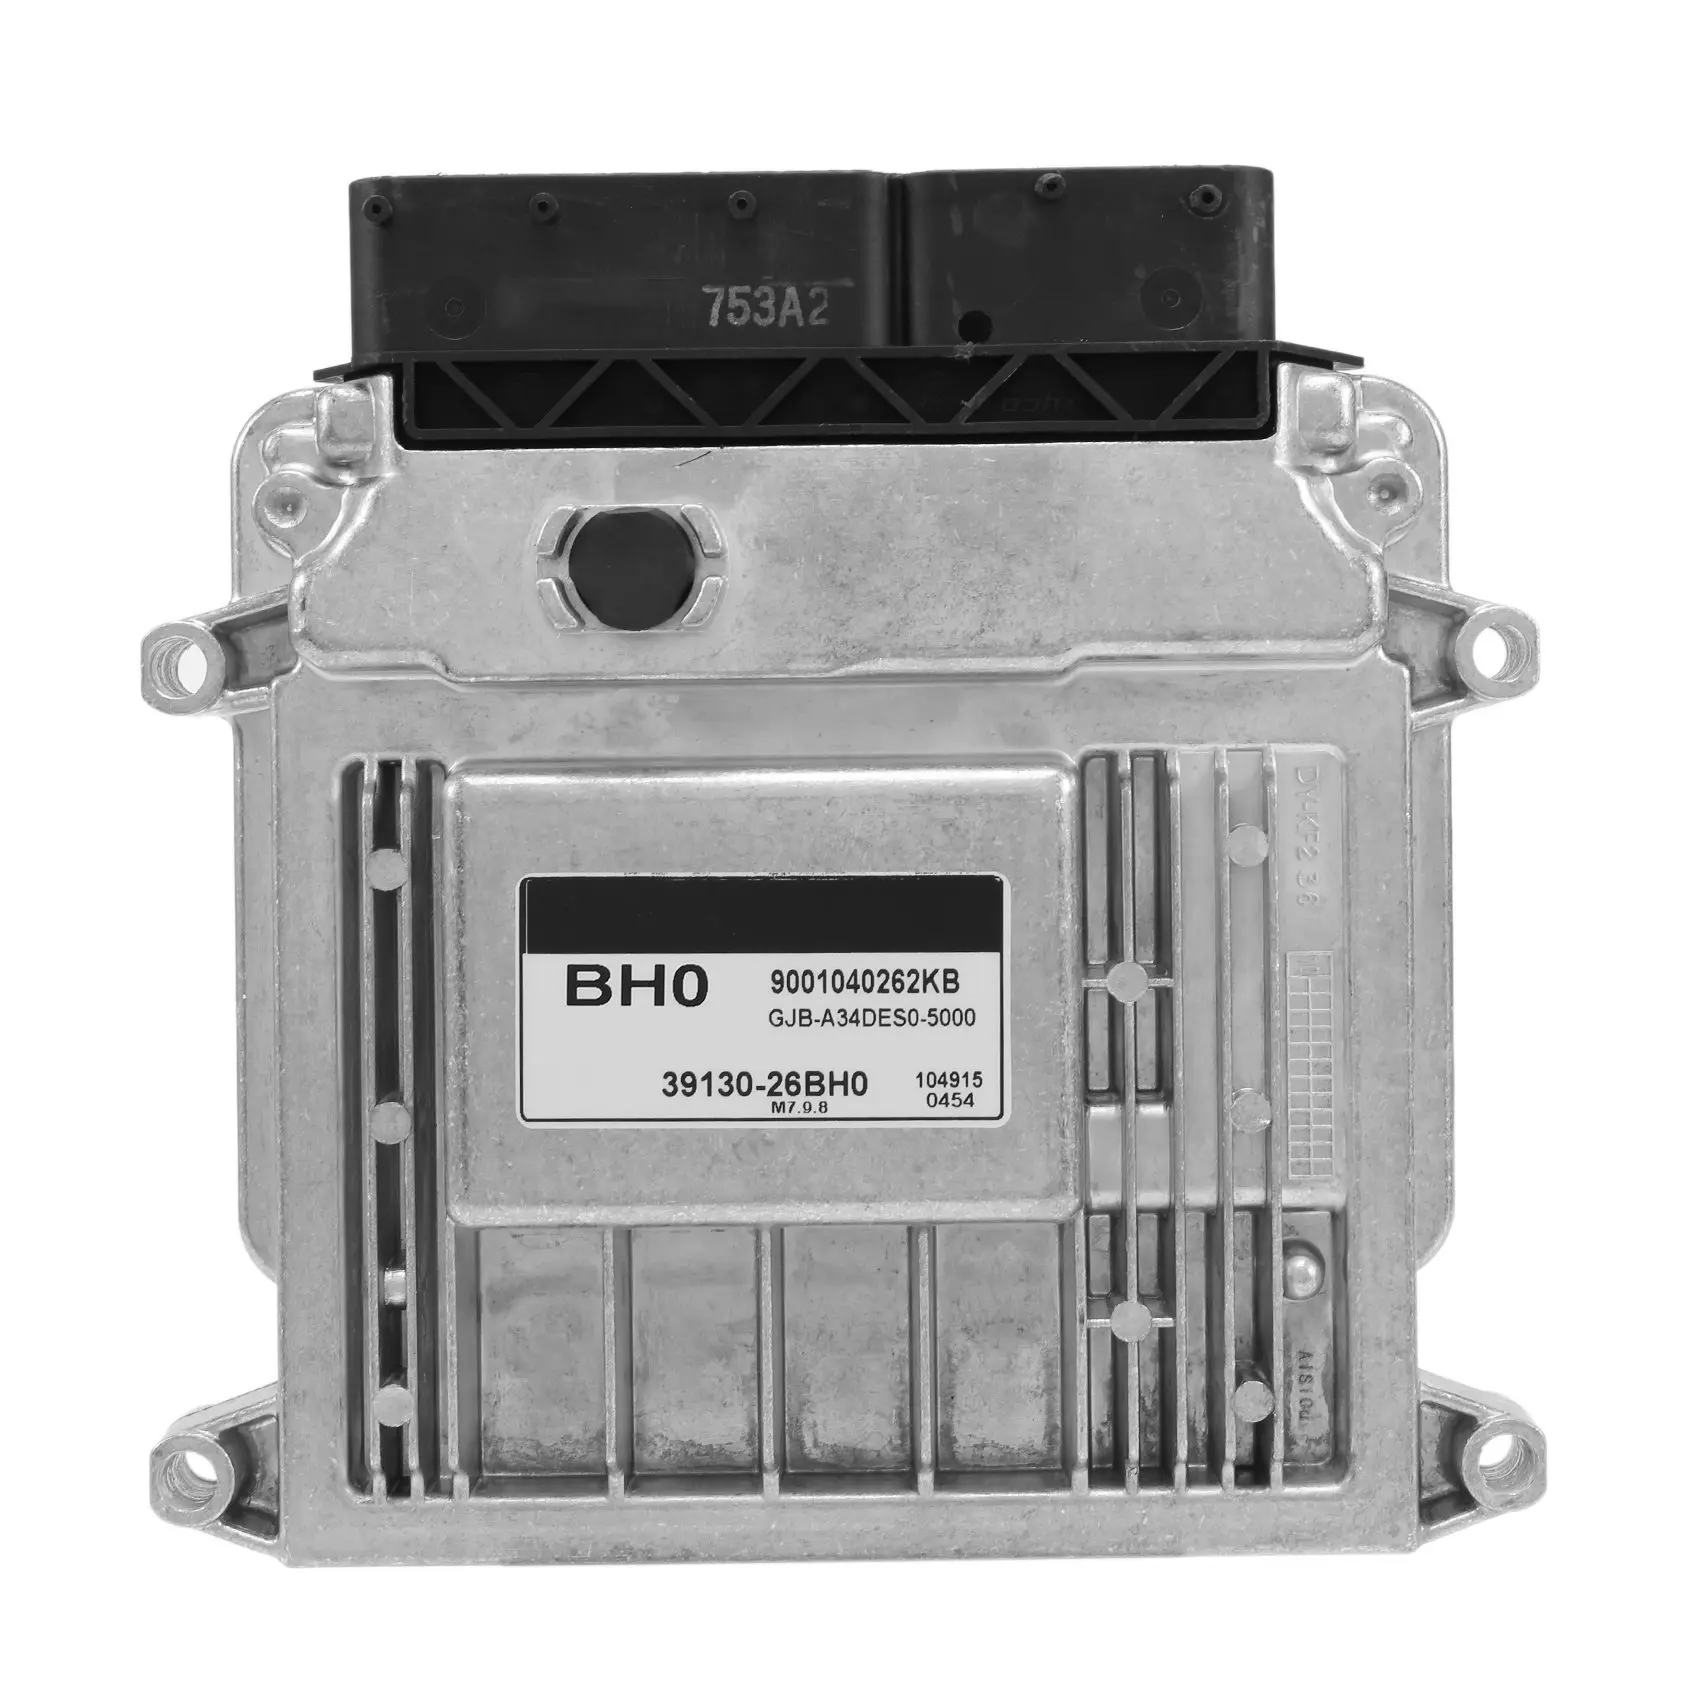 

39130-26BH0 Car Engine Computer Board ECU Electronic Control Unit for - BH0 M7.9.8 3913026BH0